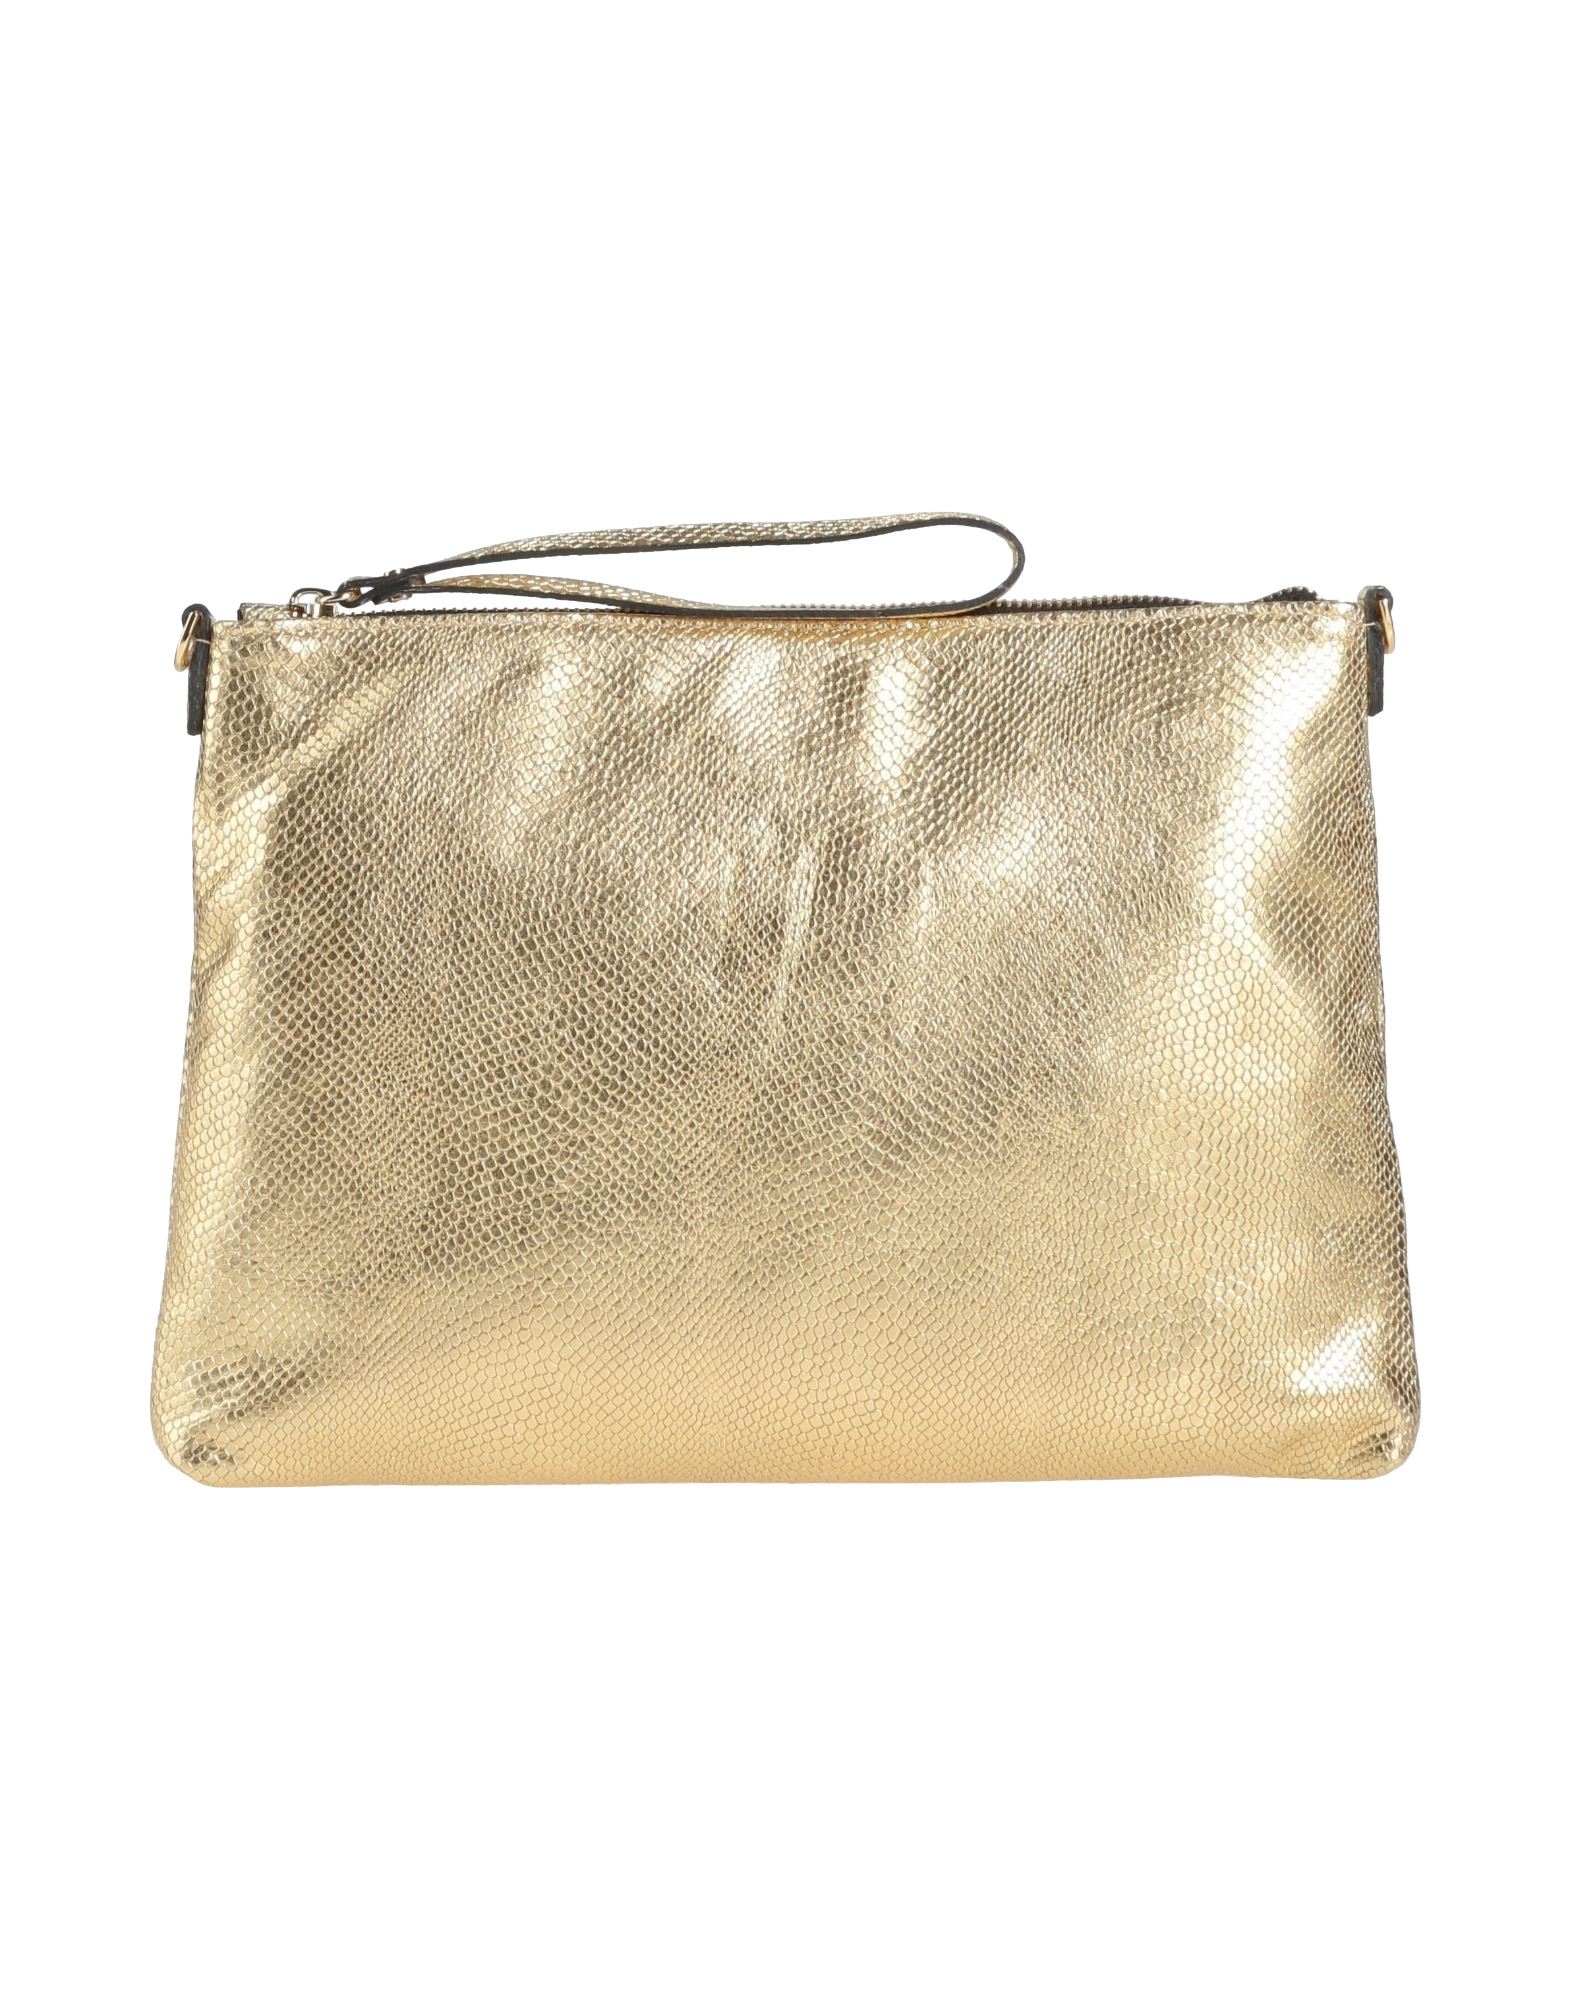 Gianni Chiarini Handbags In Gold